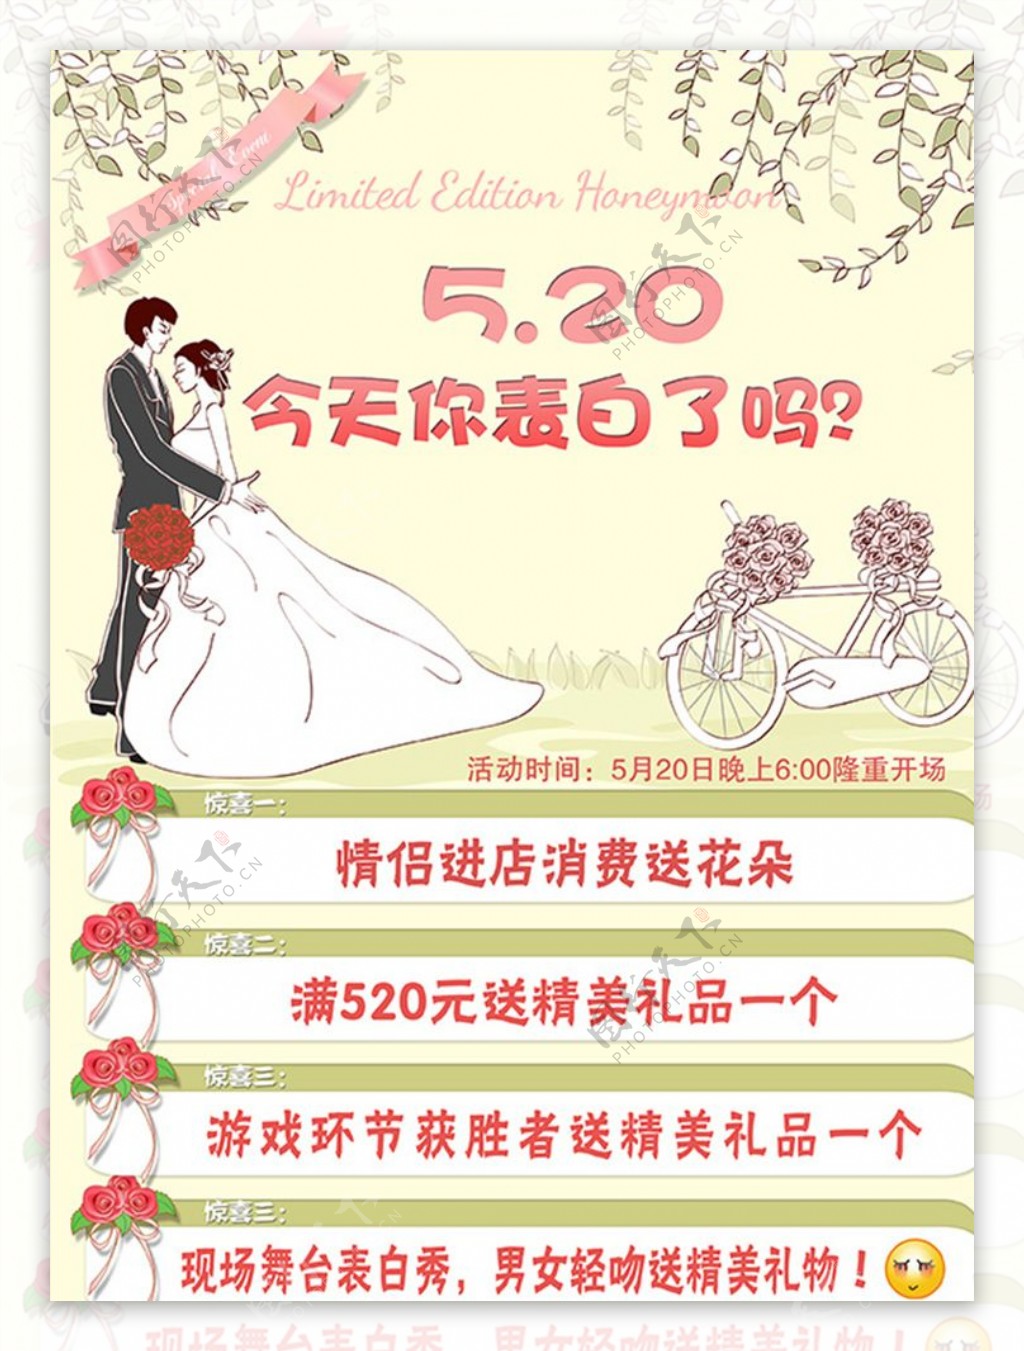 520婚庆花店特惠活动